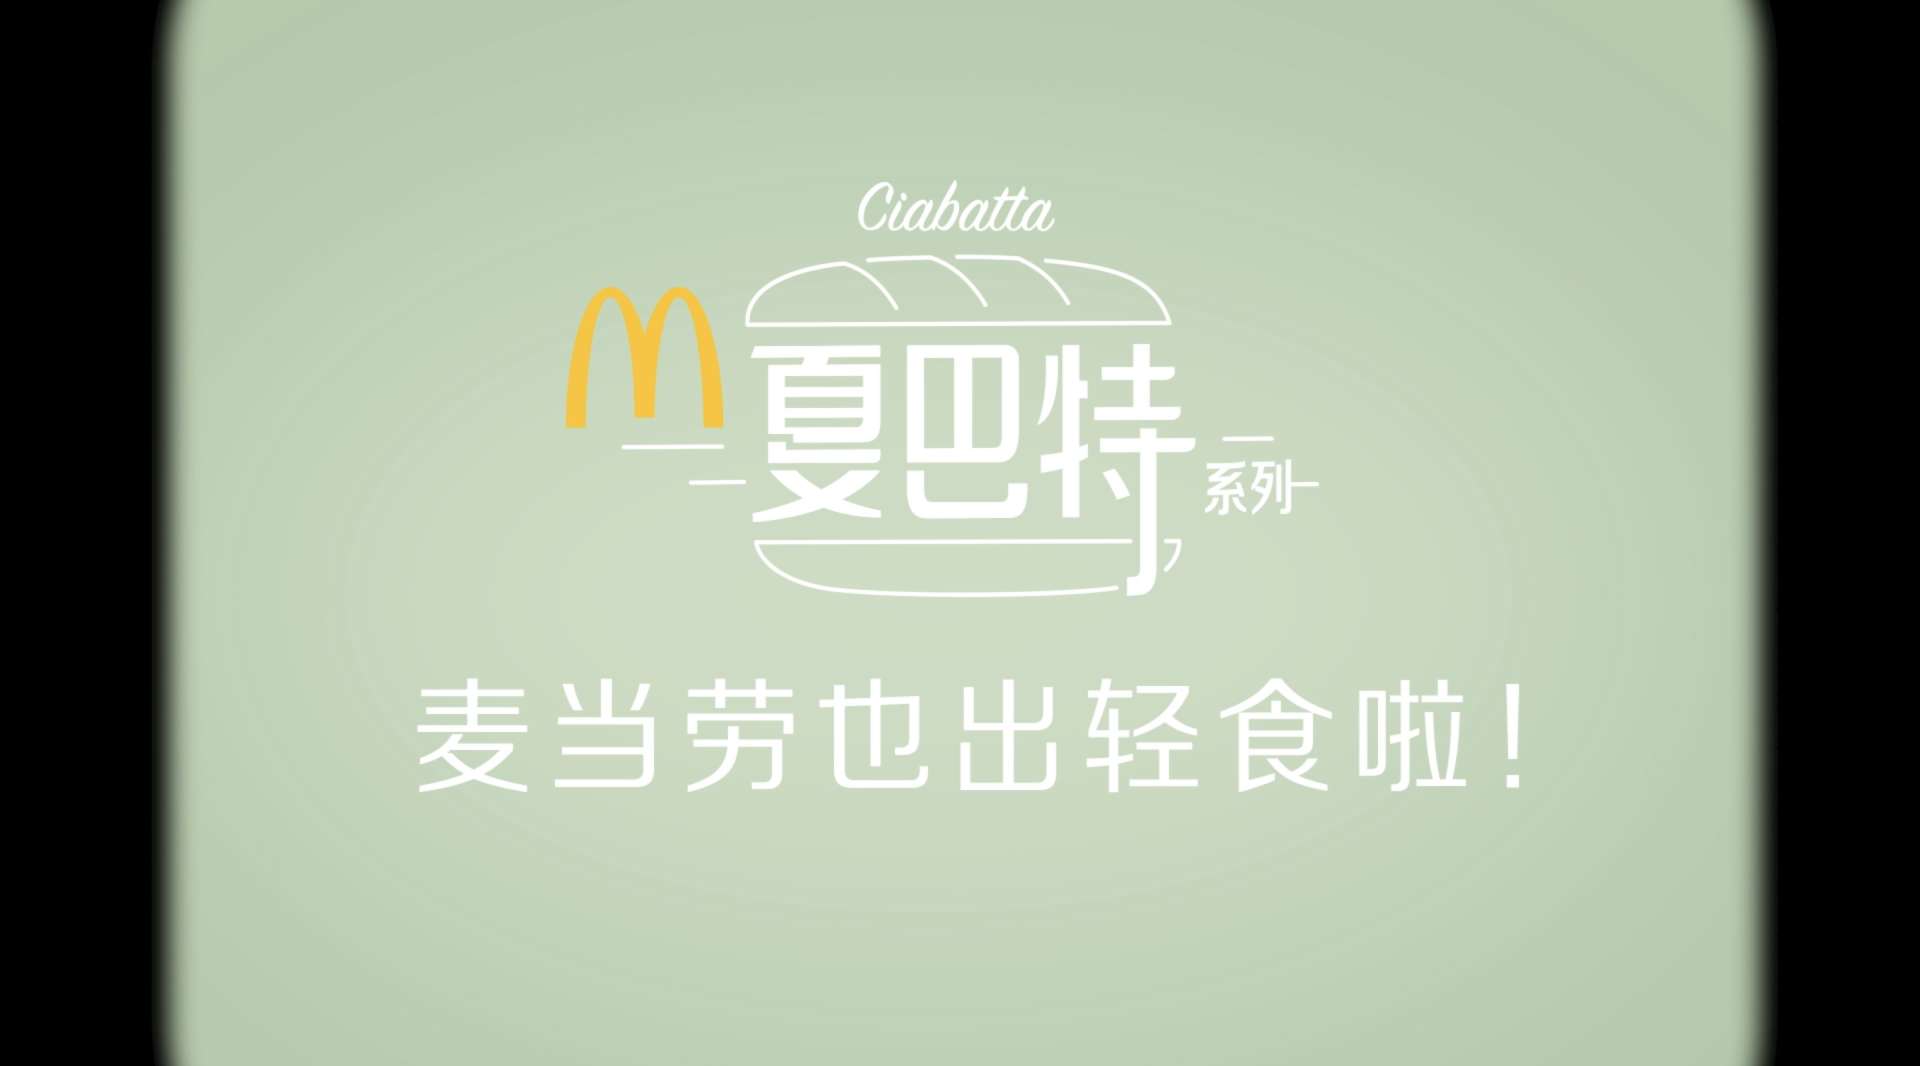 麦当劳 夏巴特轻食系列 快闪Promotional Video